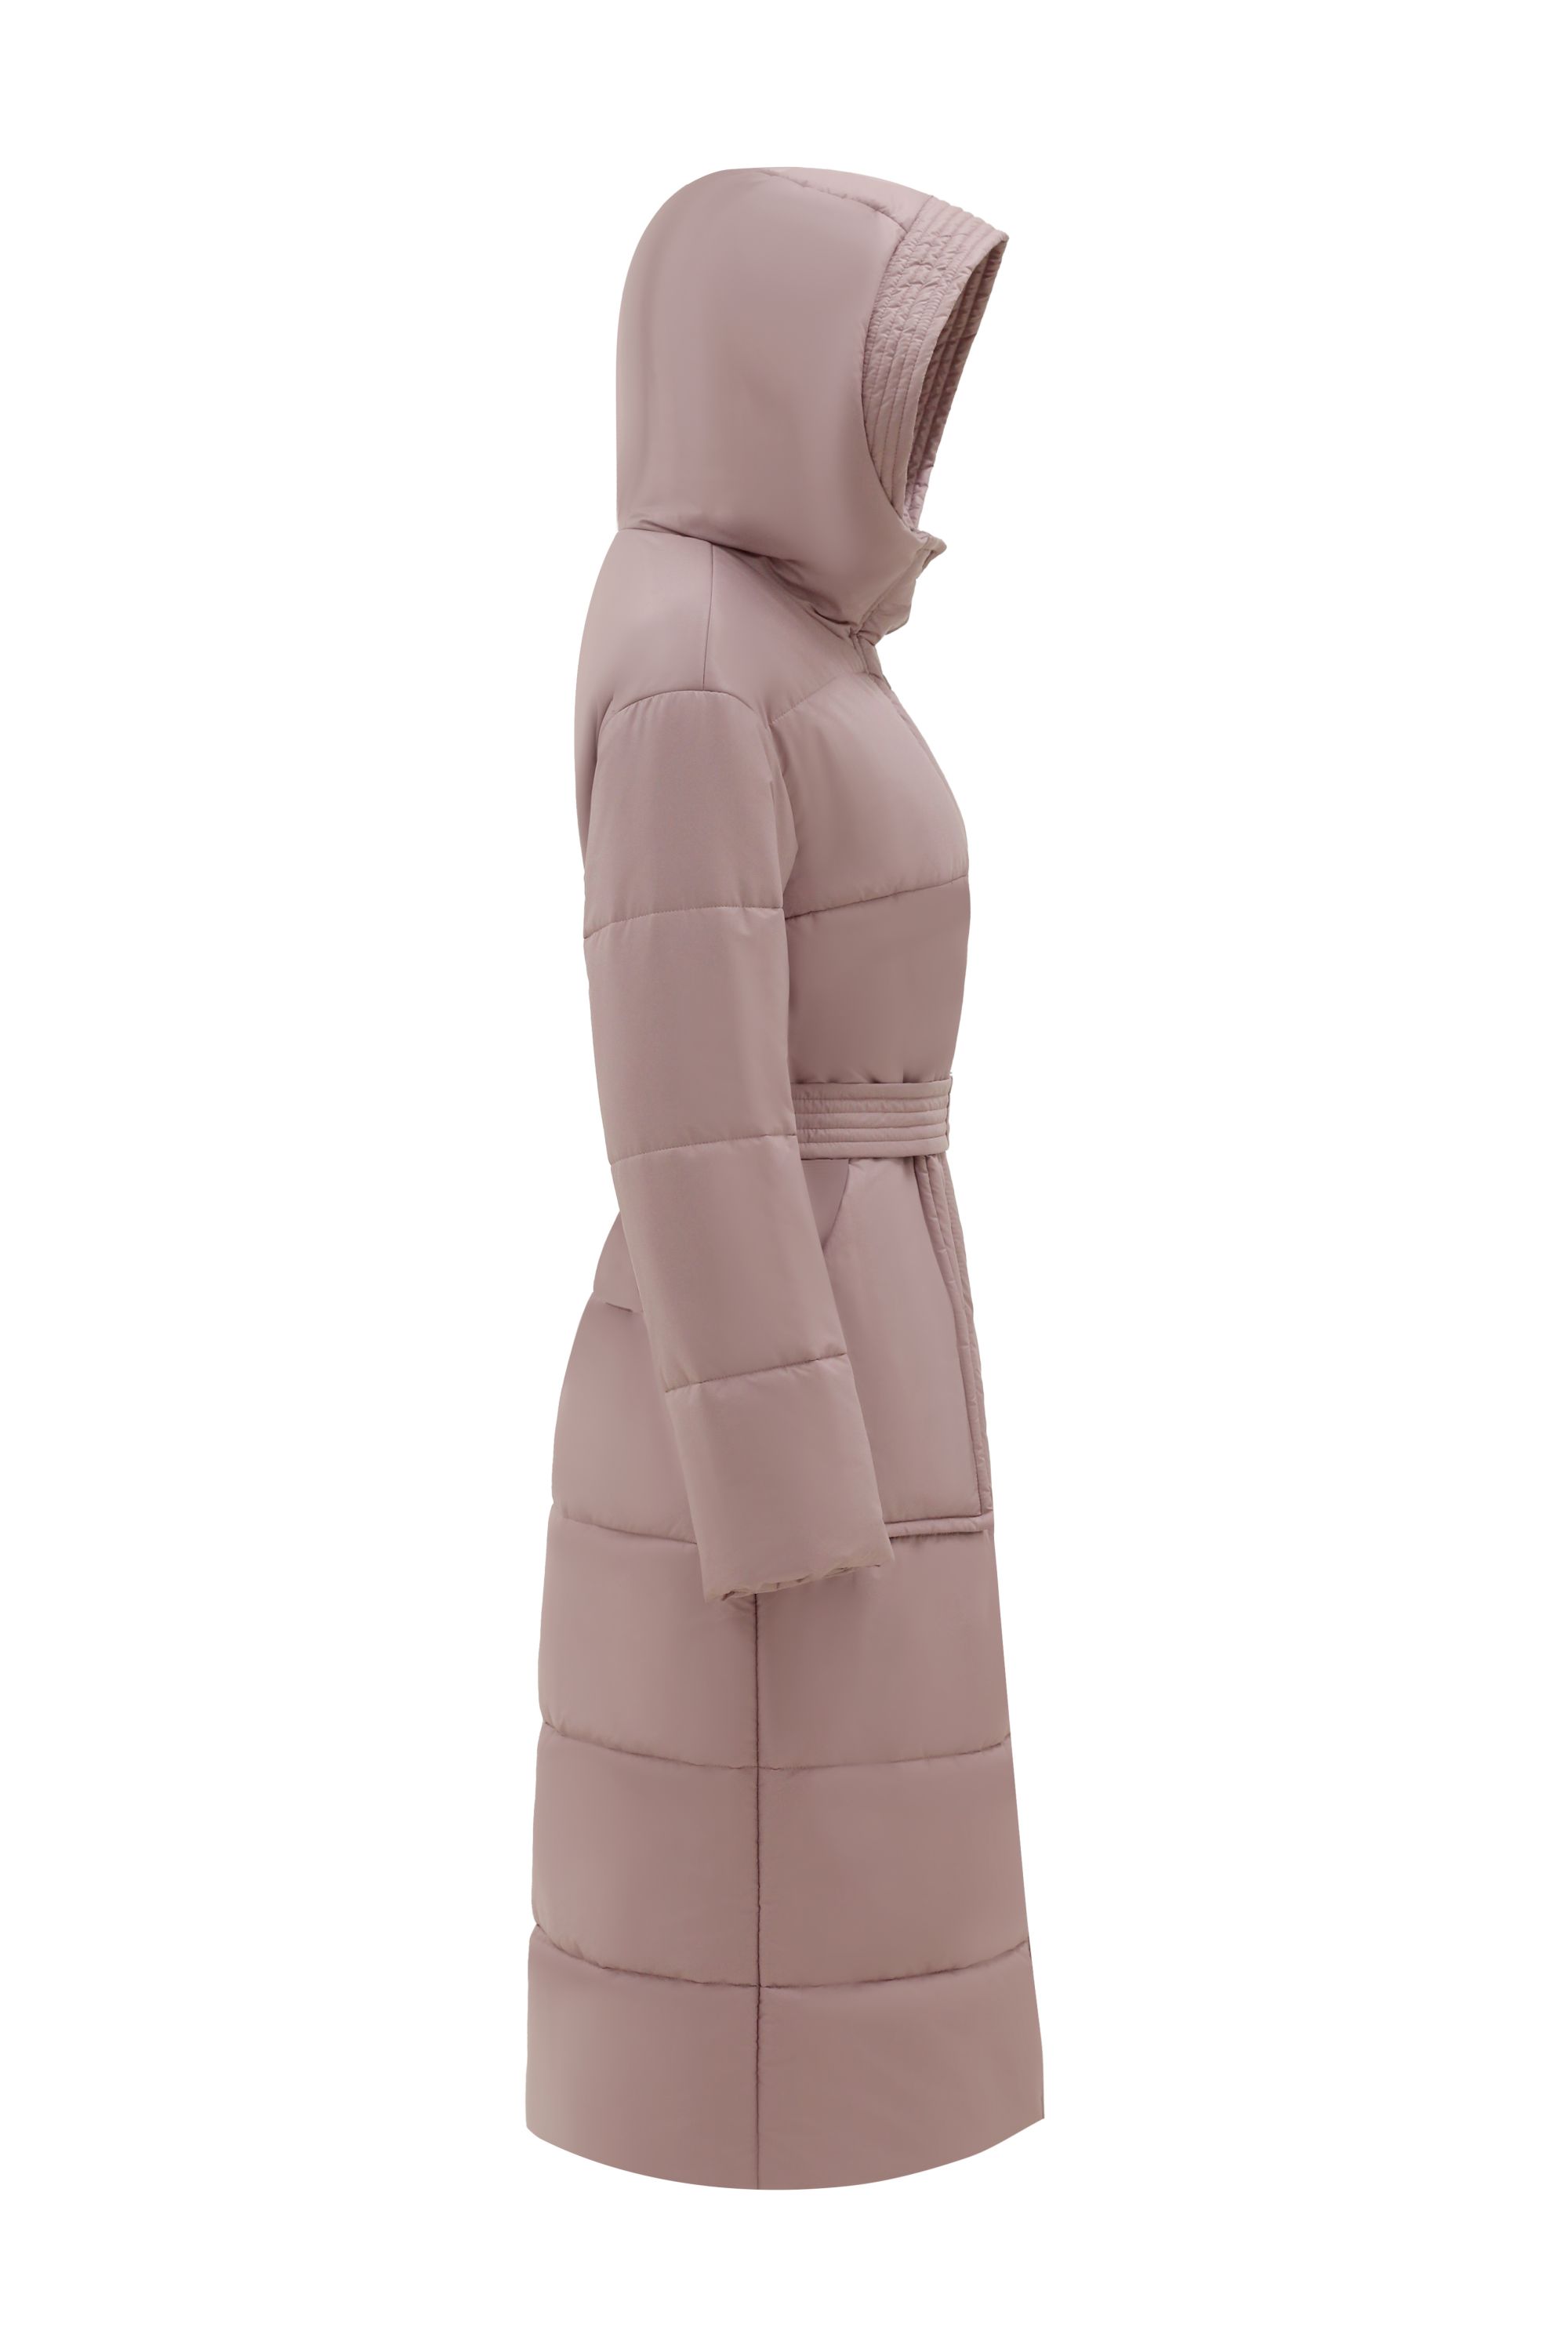 Пальто женское плащевое утепленное 5-12173-1. Фото 6.